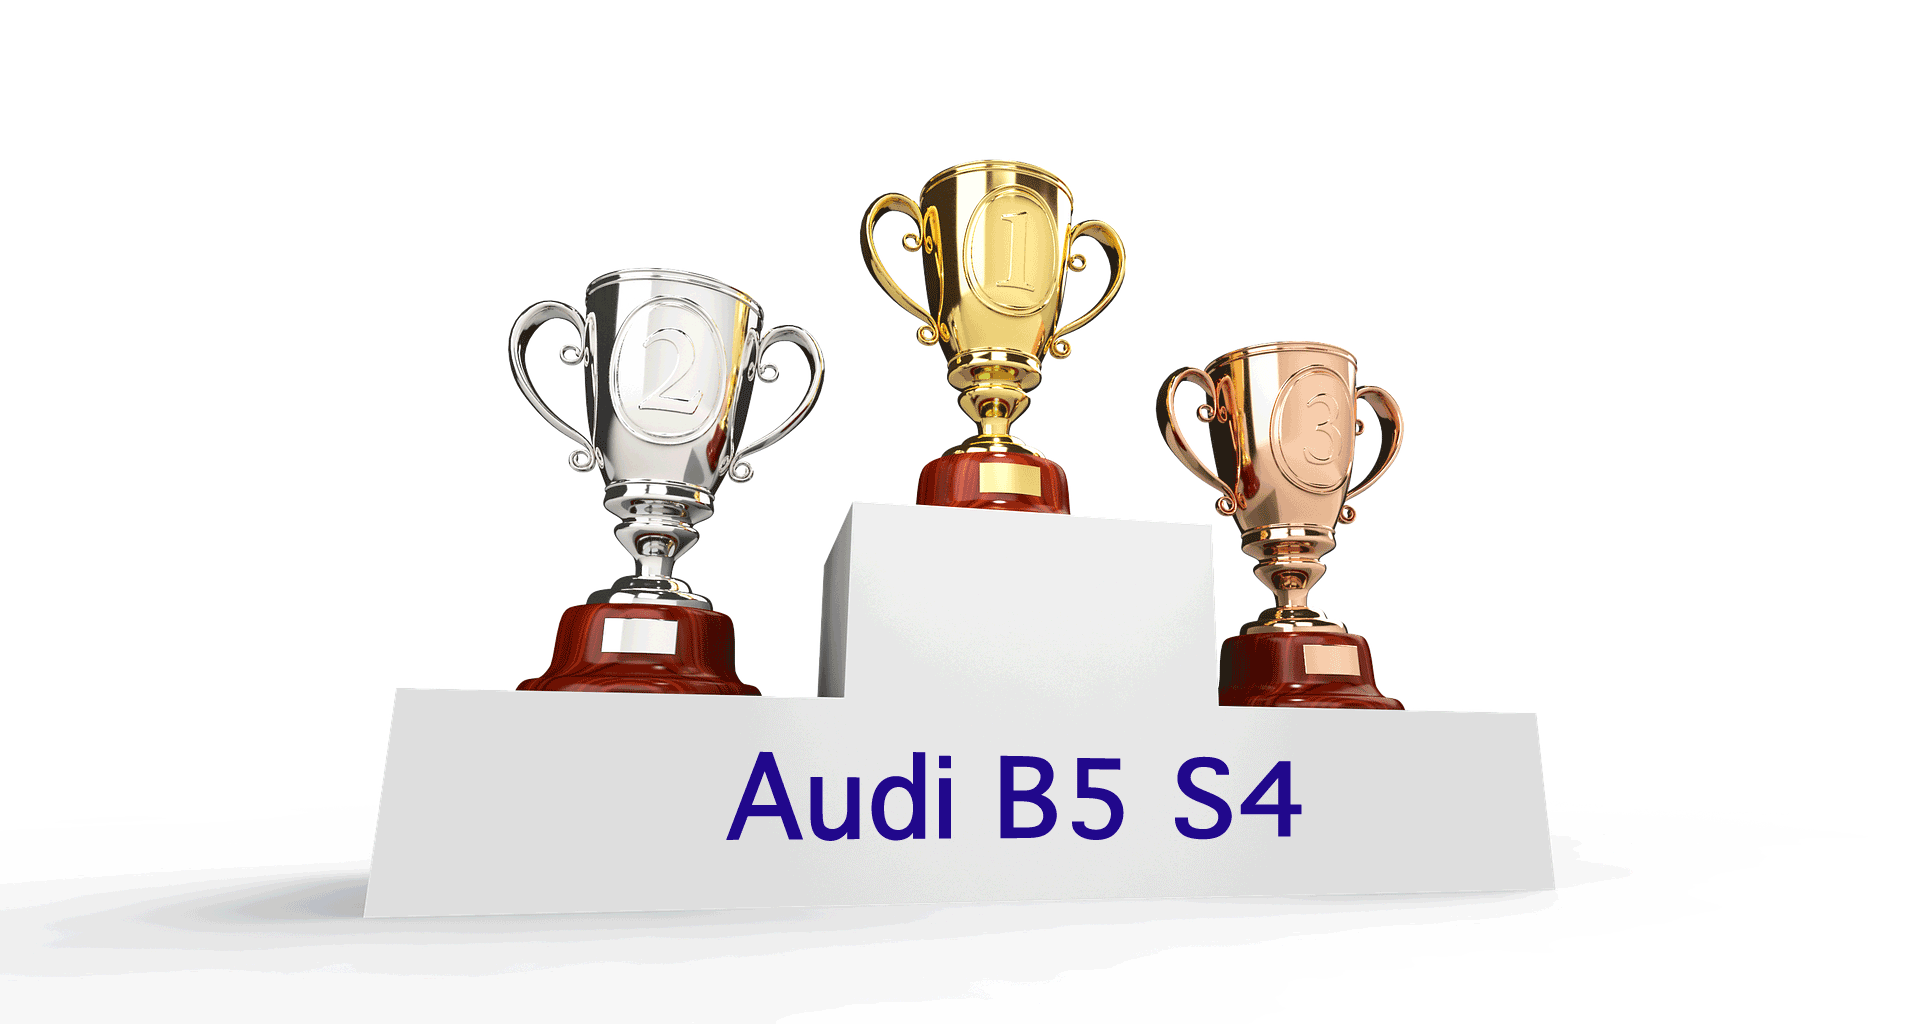 Audi B5 S4 Hall of Fame